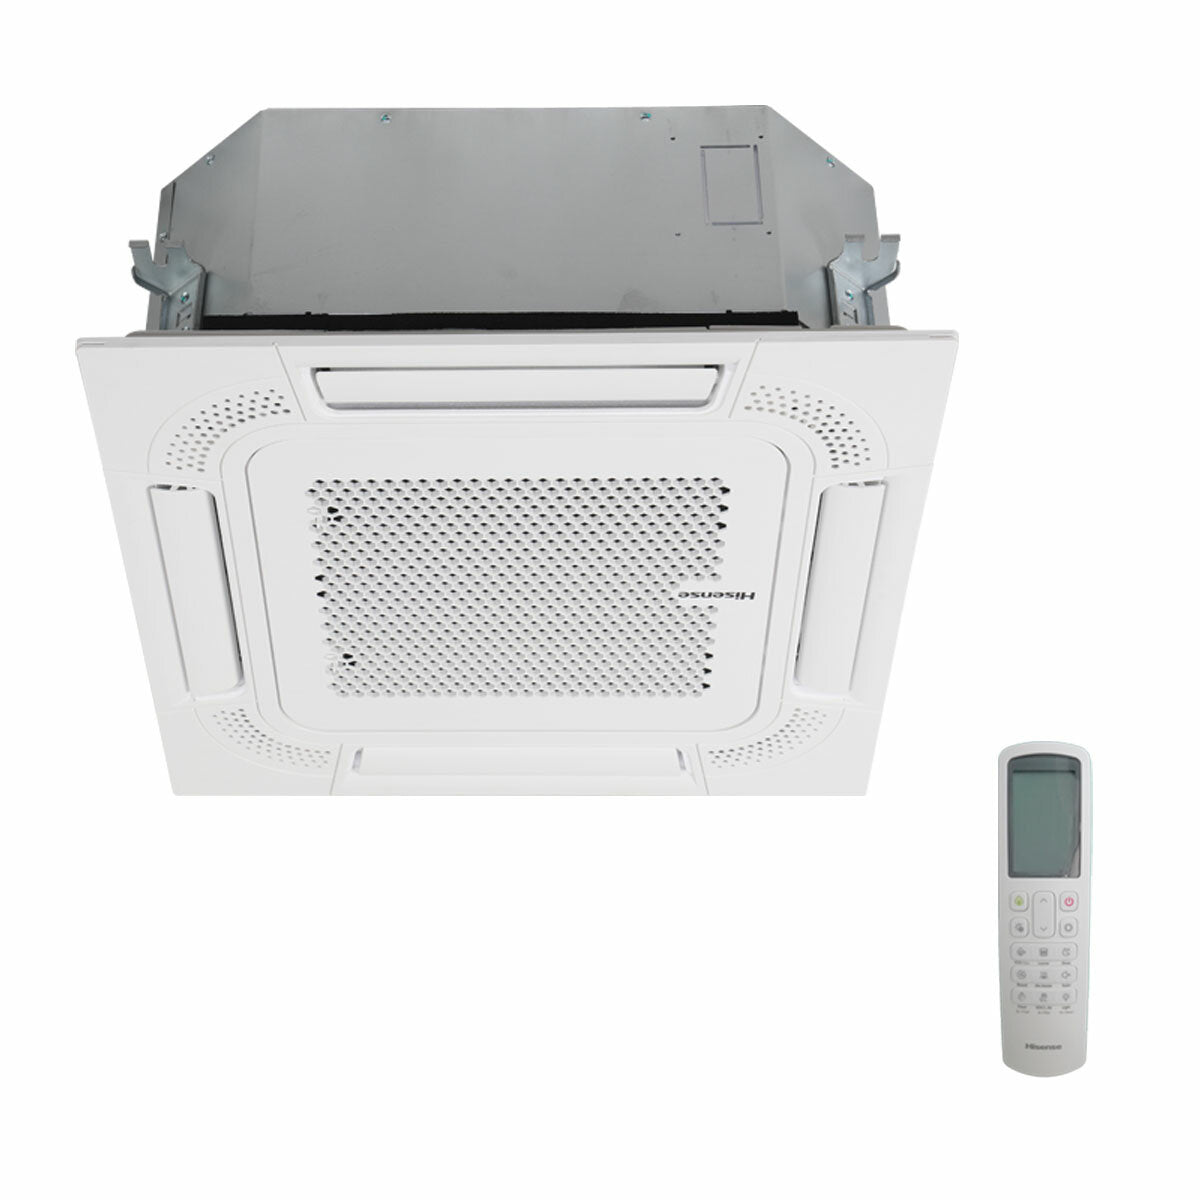 Hisense air conditioner ACT penta split 9000+9000+9000+9000+12000 BTU inverter outdoor unit 12.5 kW